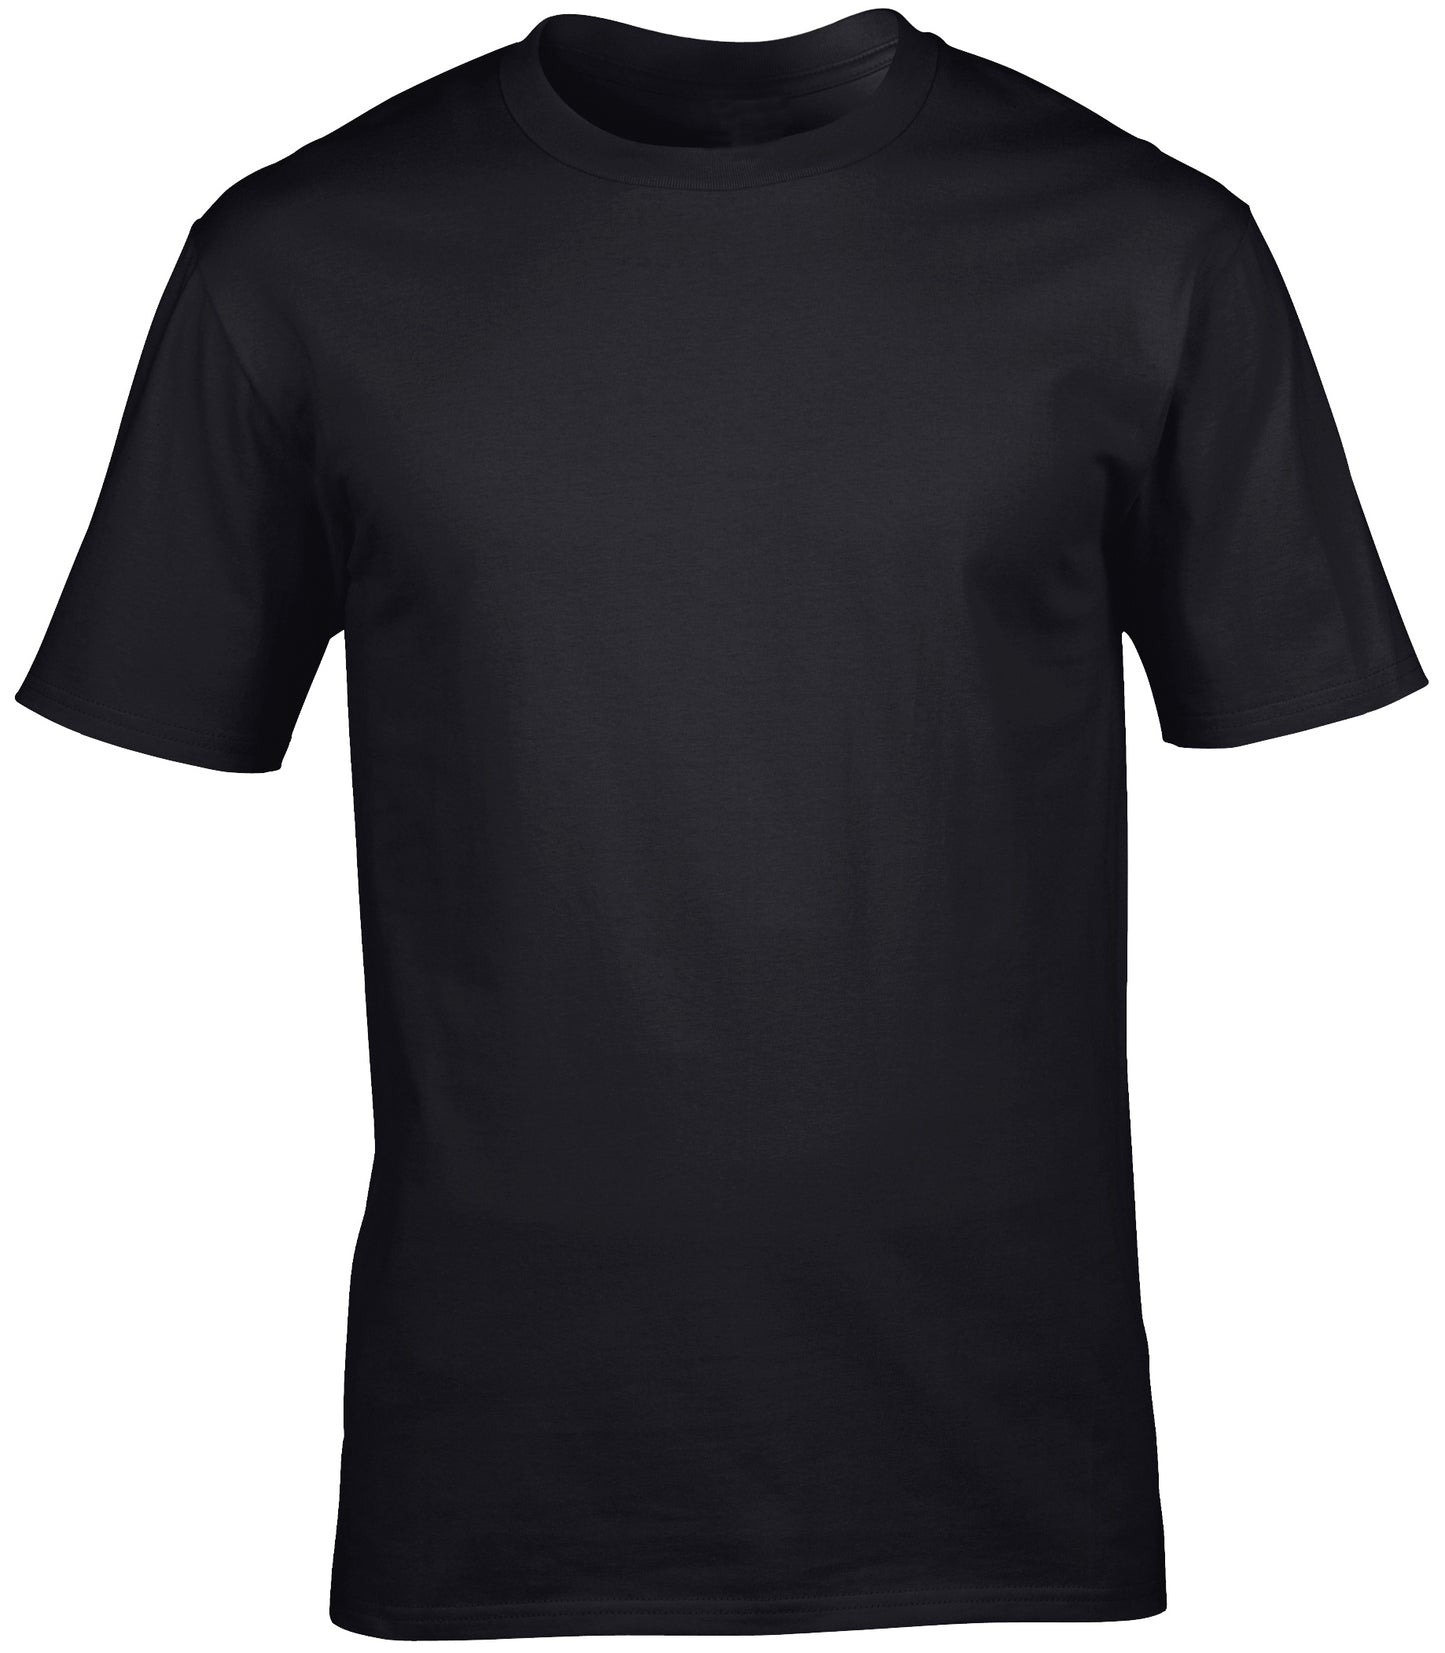 Personalised Unisex T-shirt